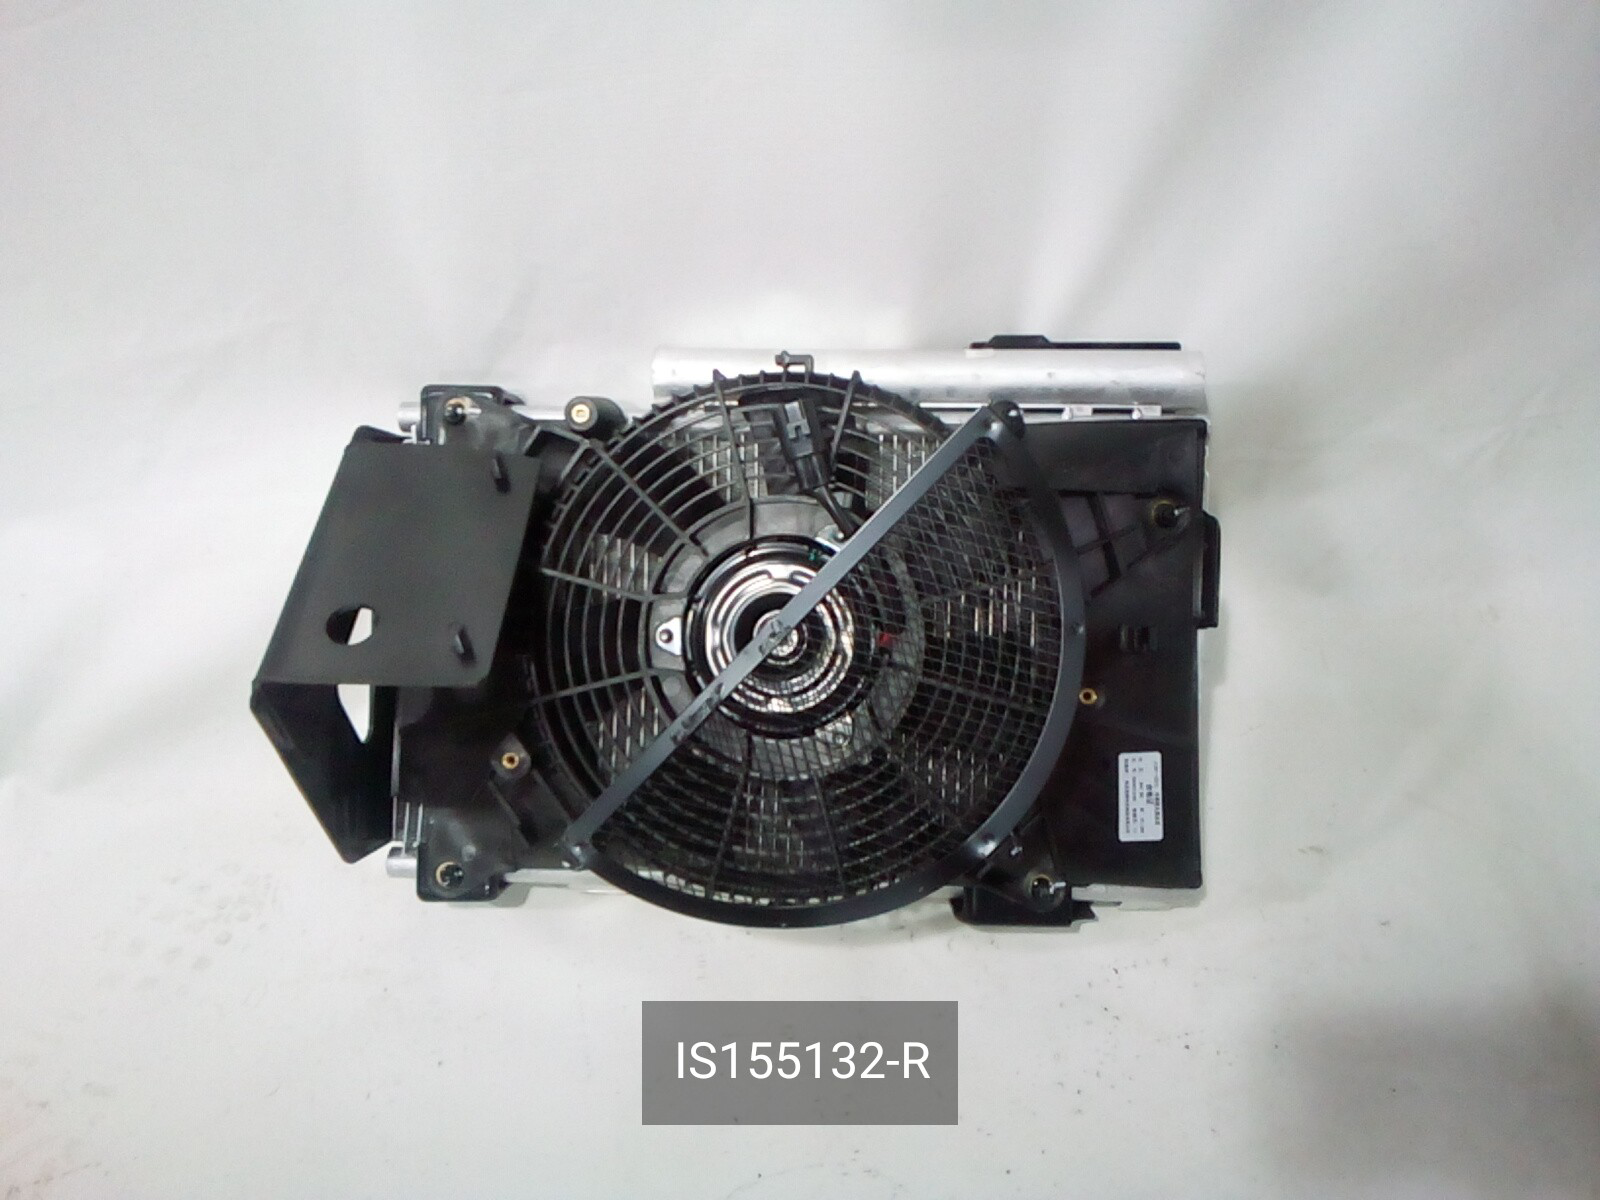 Радиатор, JMC, кондиционера, IS155132-R.